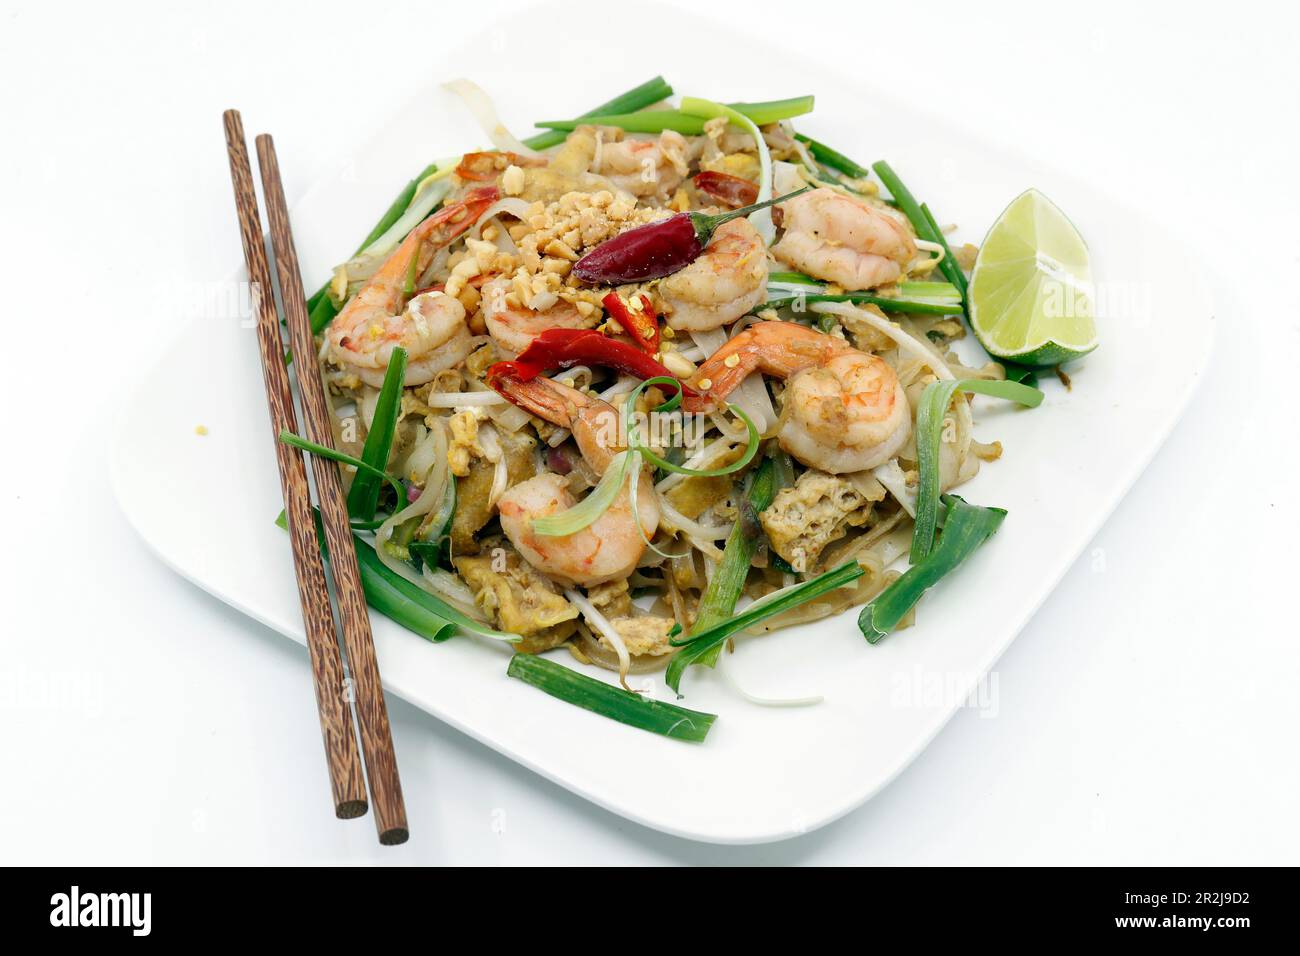 Das klassische Thai Dish Pad Thai, bestehend aus gebratenen Nudeln mit Garnelen, Bohnensprossen, gebratenem Tofu, zerdrückten Erdnüssen und Frühlingszwiebeln, Frankreich, Europa Stockfoto